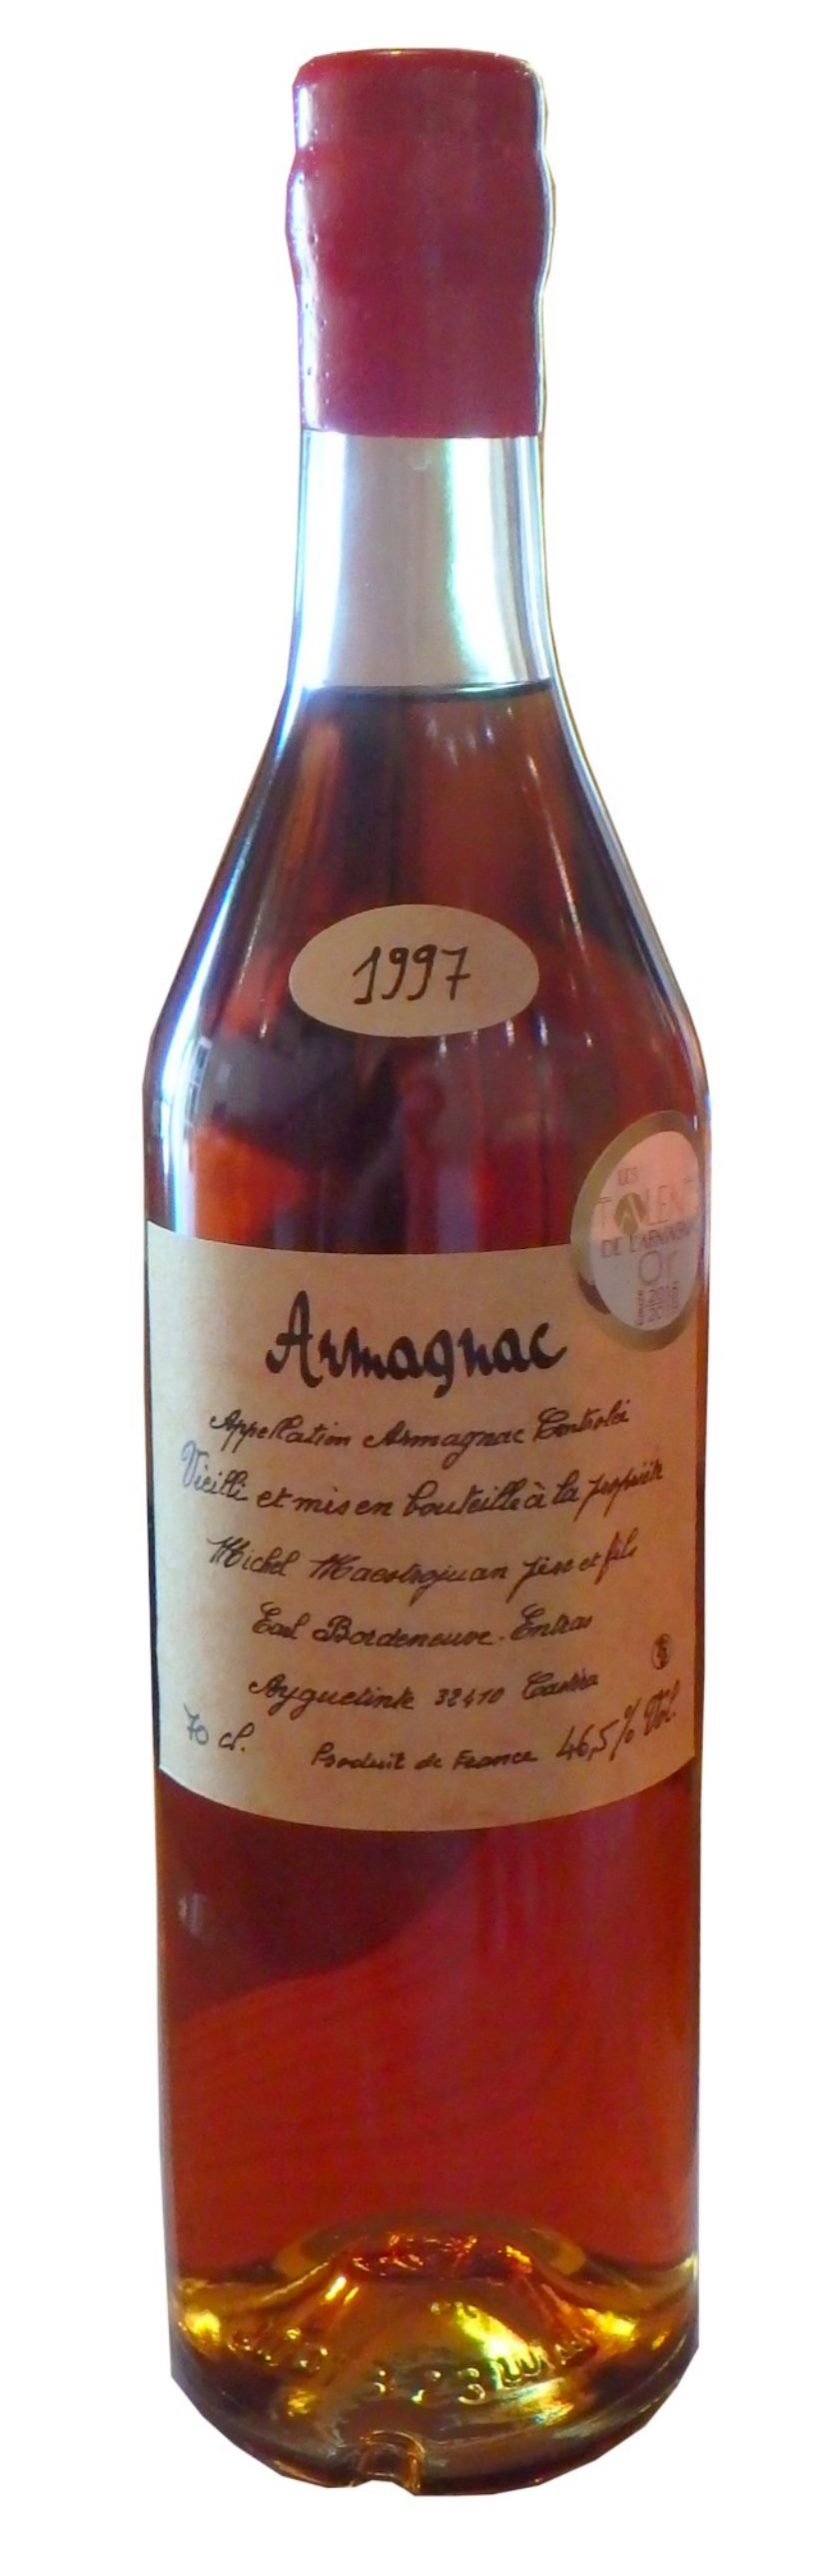 Domaine Entras 1997 – Armagnac Ténareze